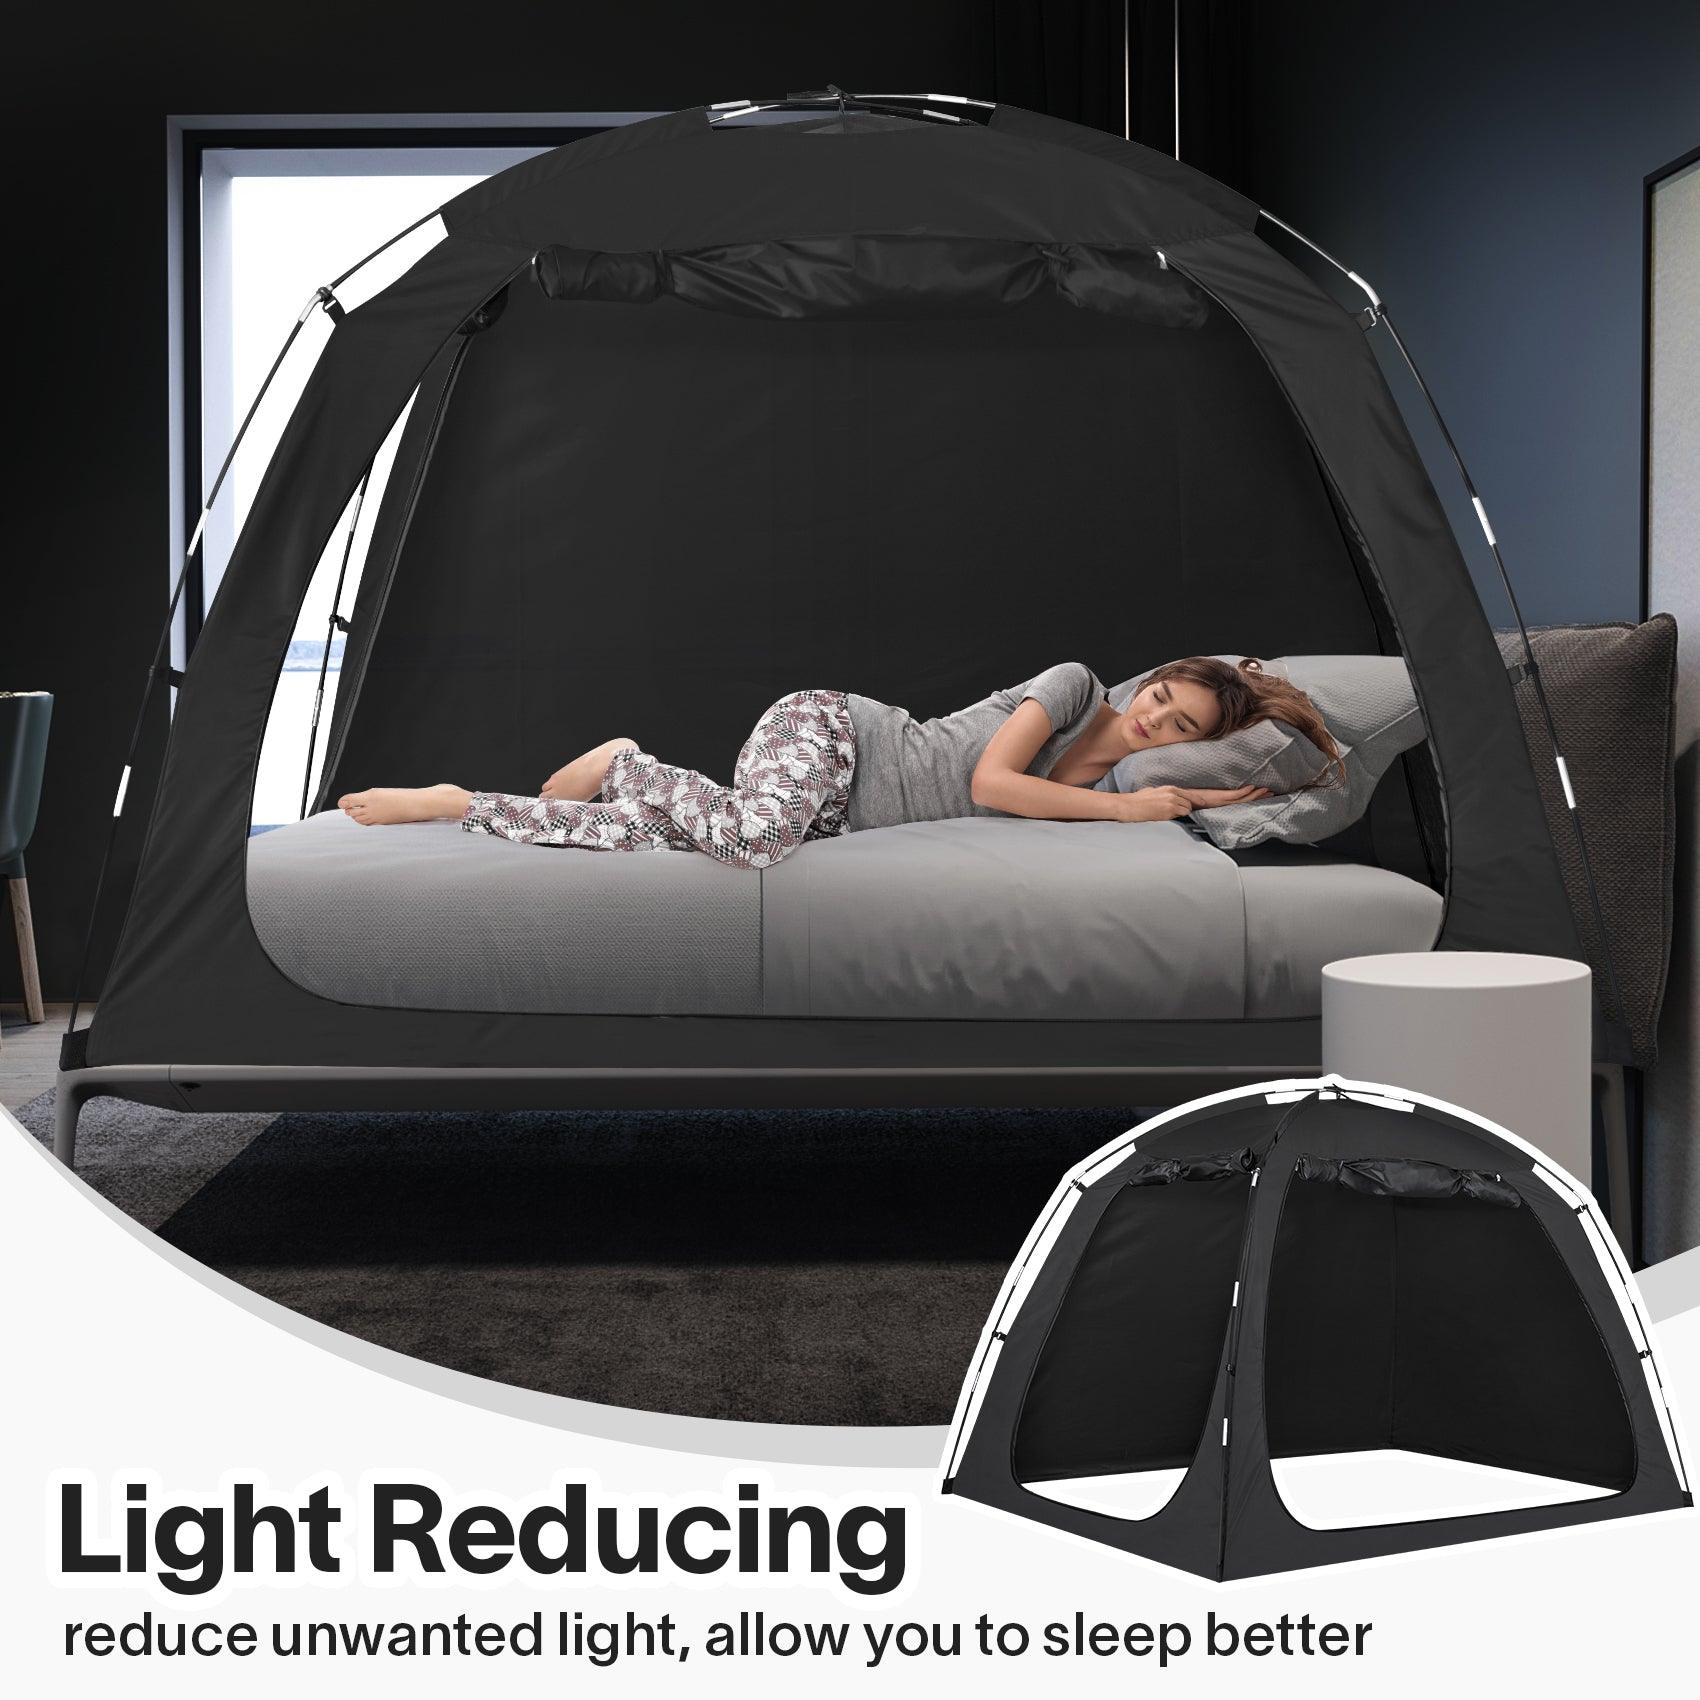 EighteenTek bed tent Light Reducing